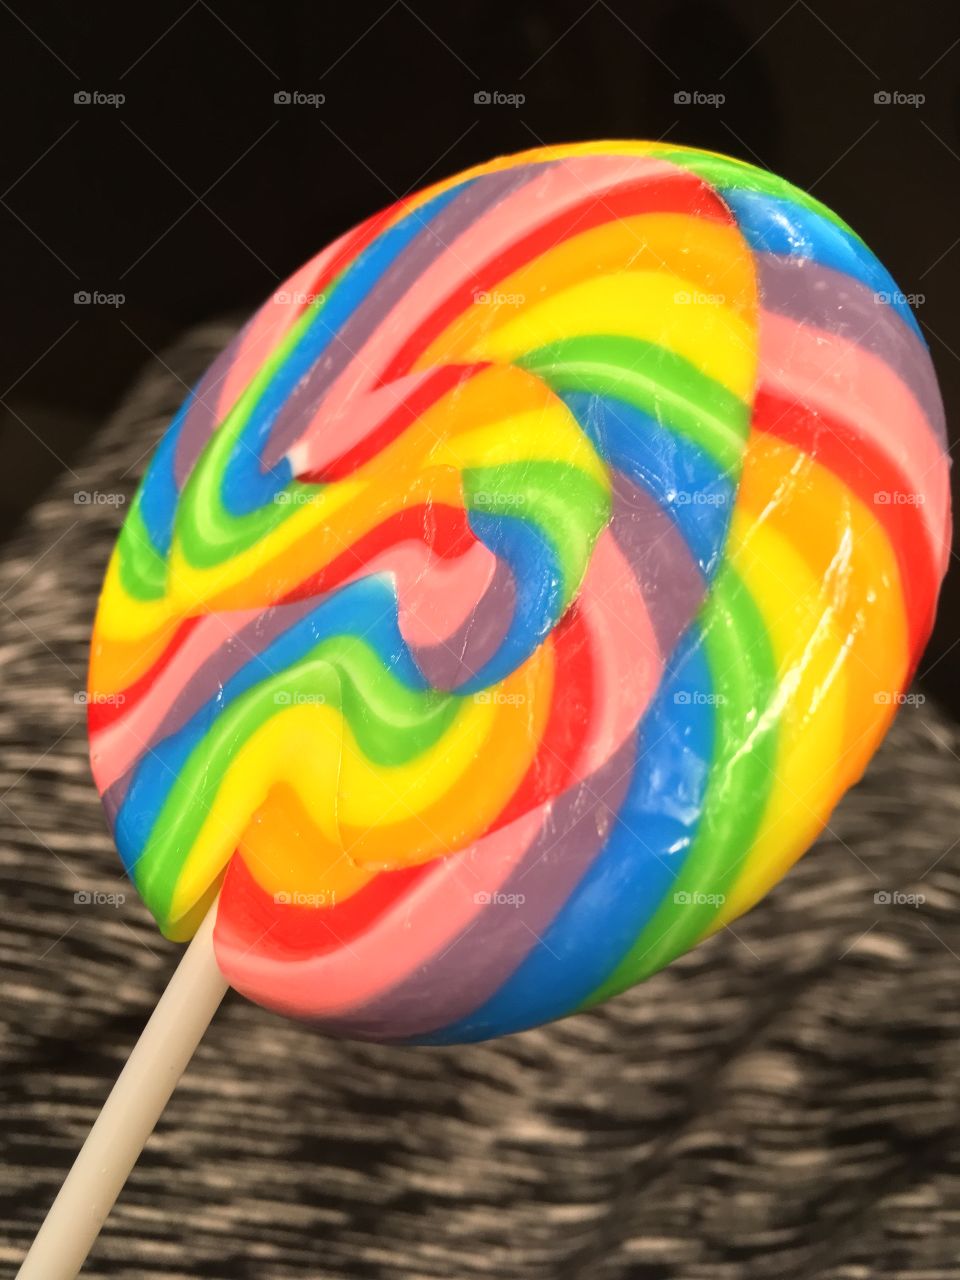 🍭 Lollipop 